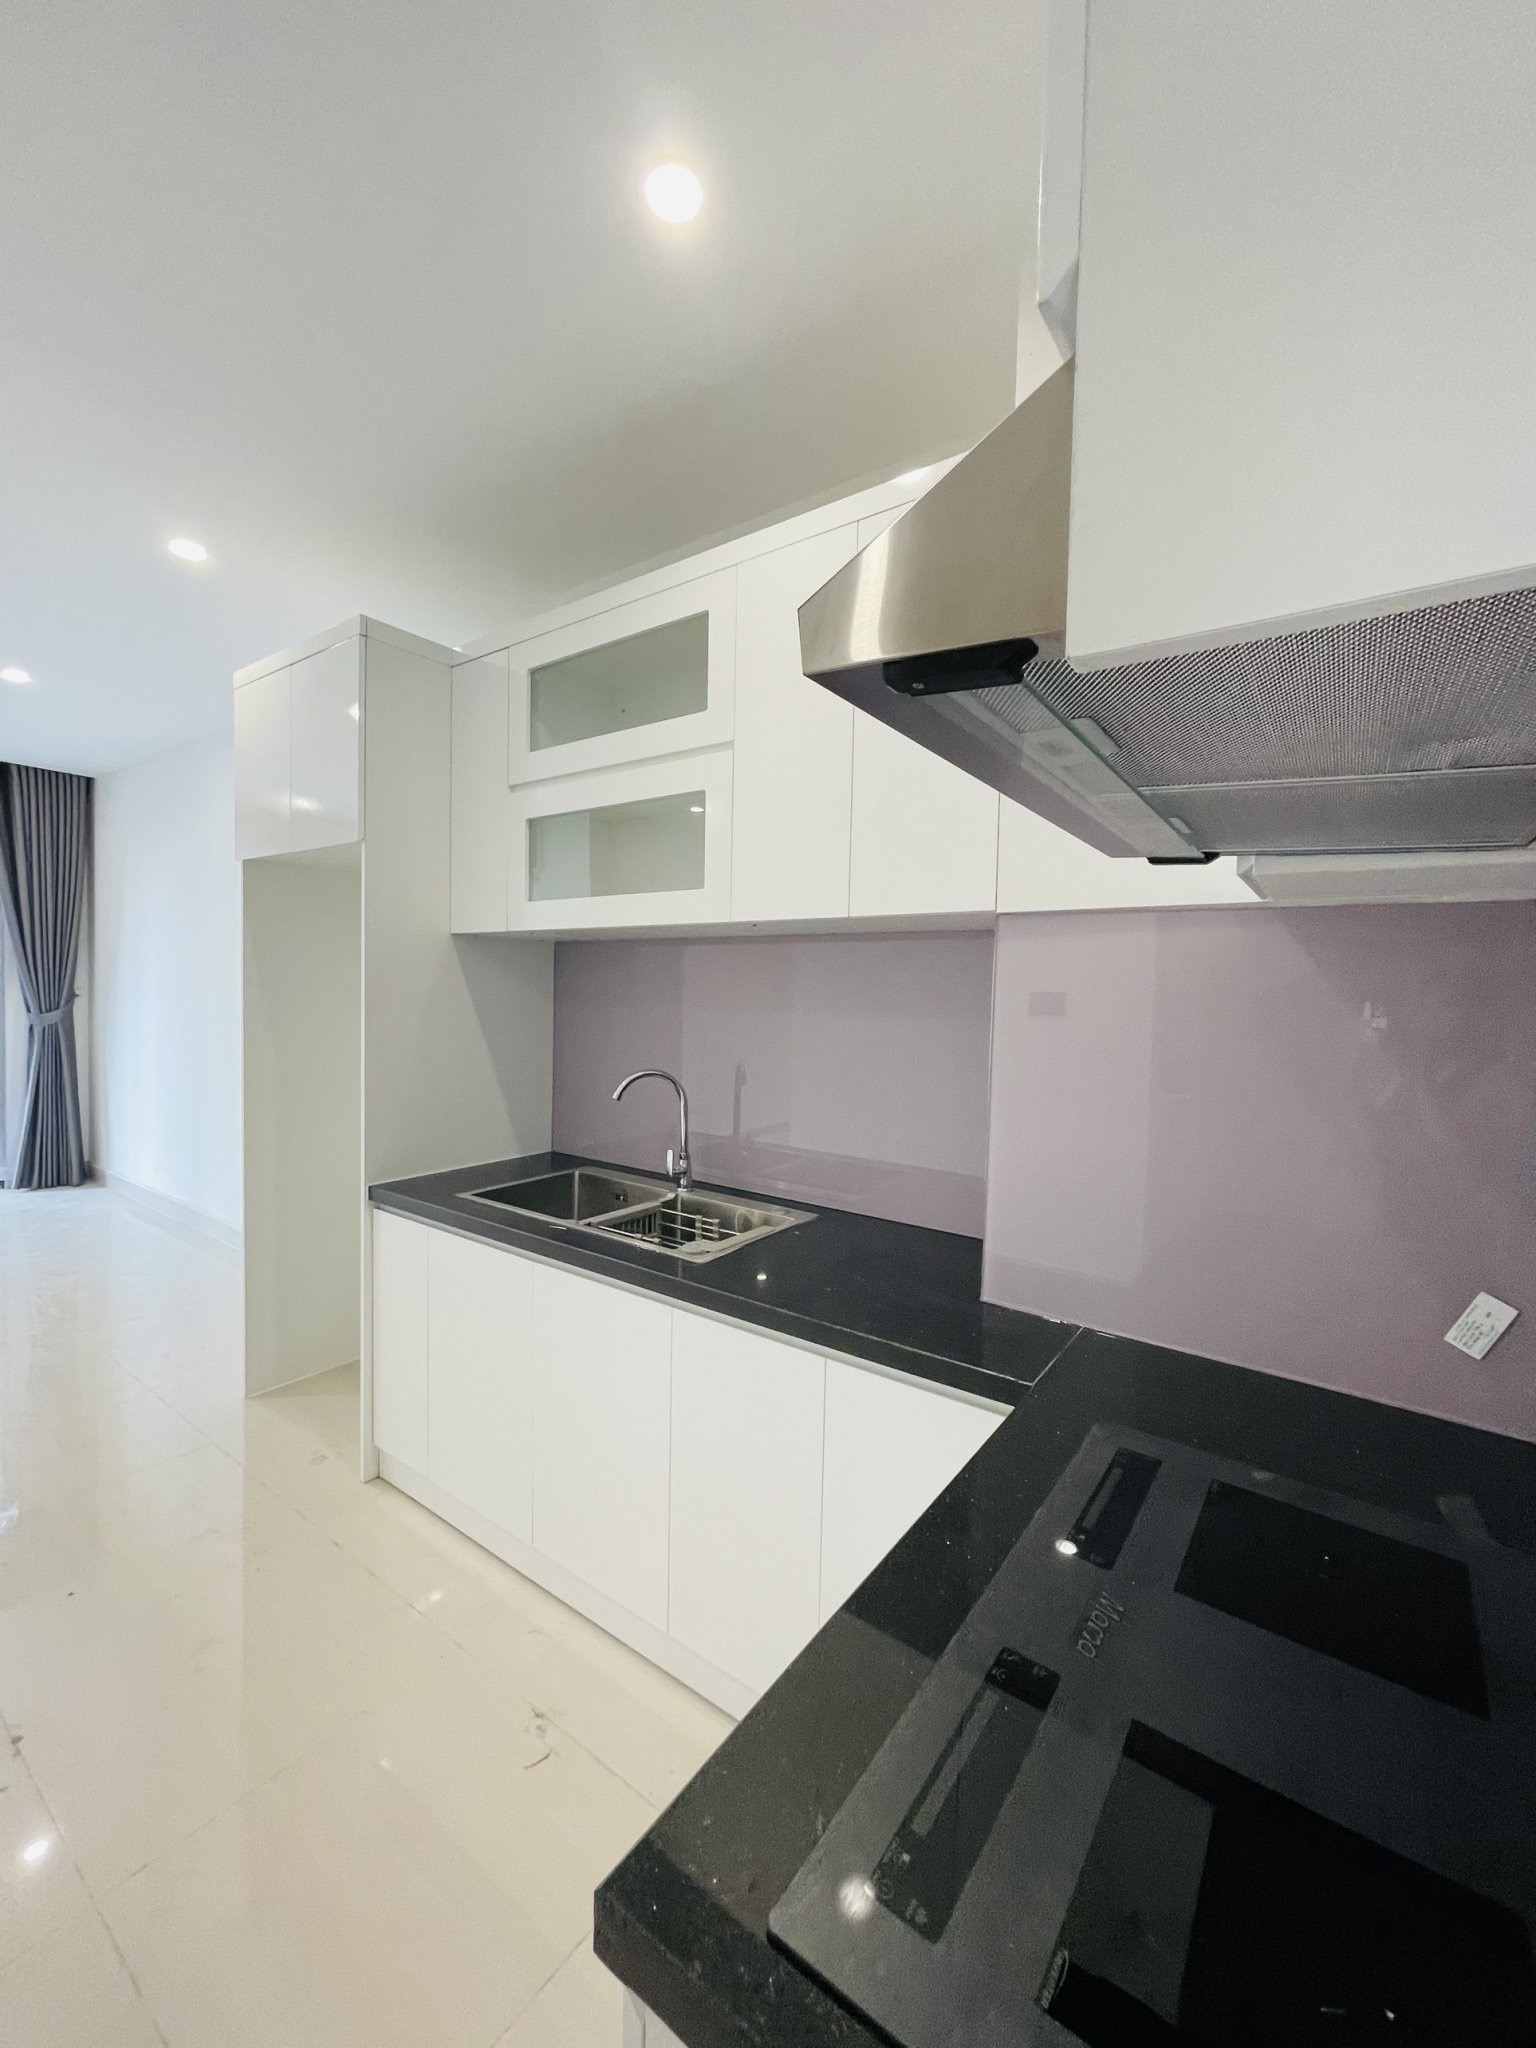 Cho thuê căn hộ mới 82m2 Vinhomes Grand Park Q9 nội thất cơ bản tầng 7 - Ảnh 1